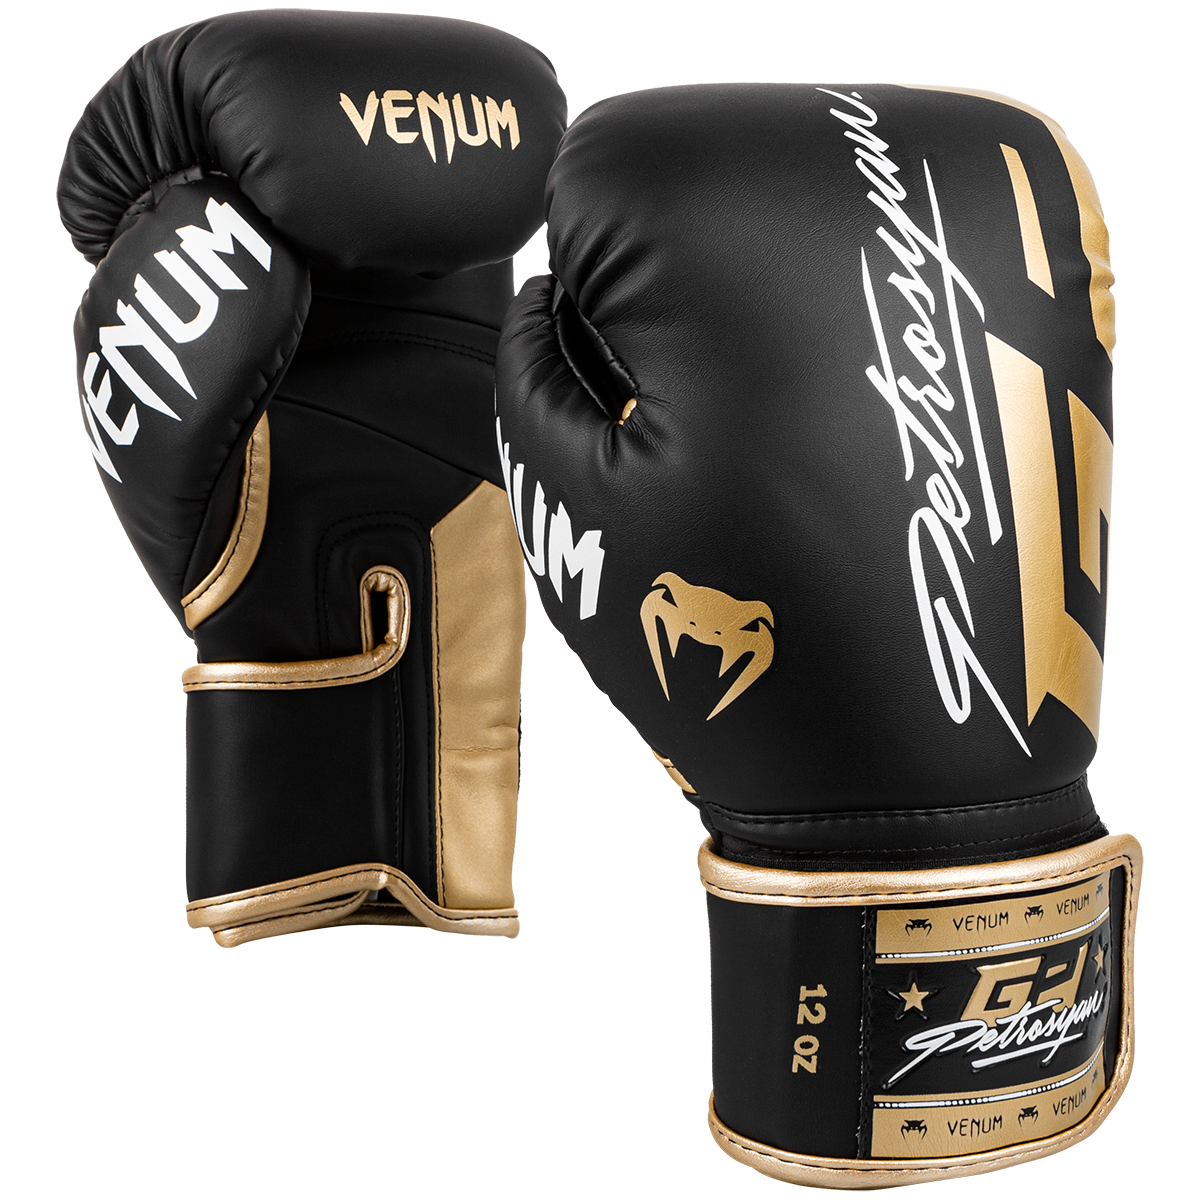 Black Venum Boxing Gloves PNG Image